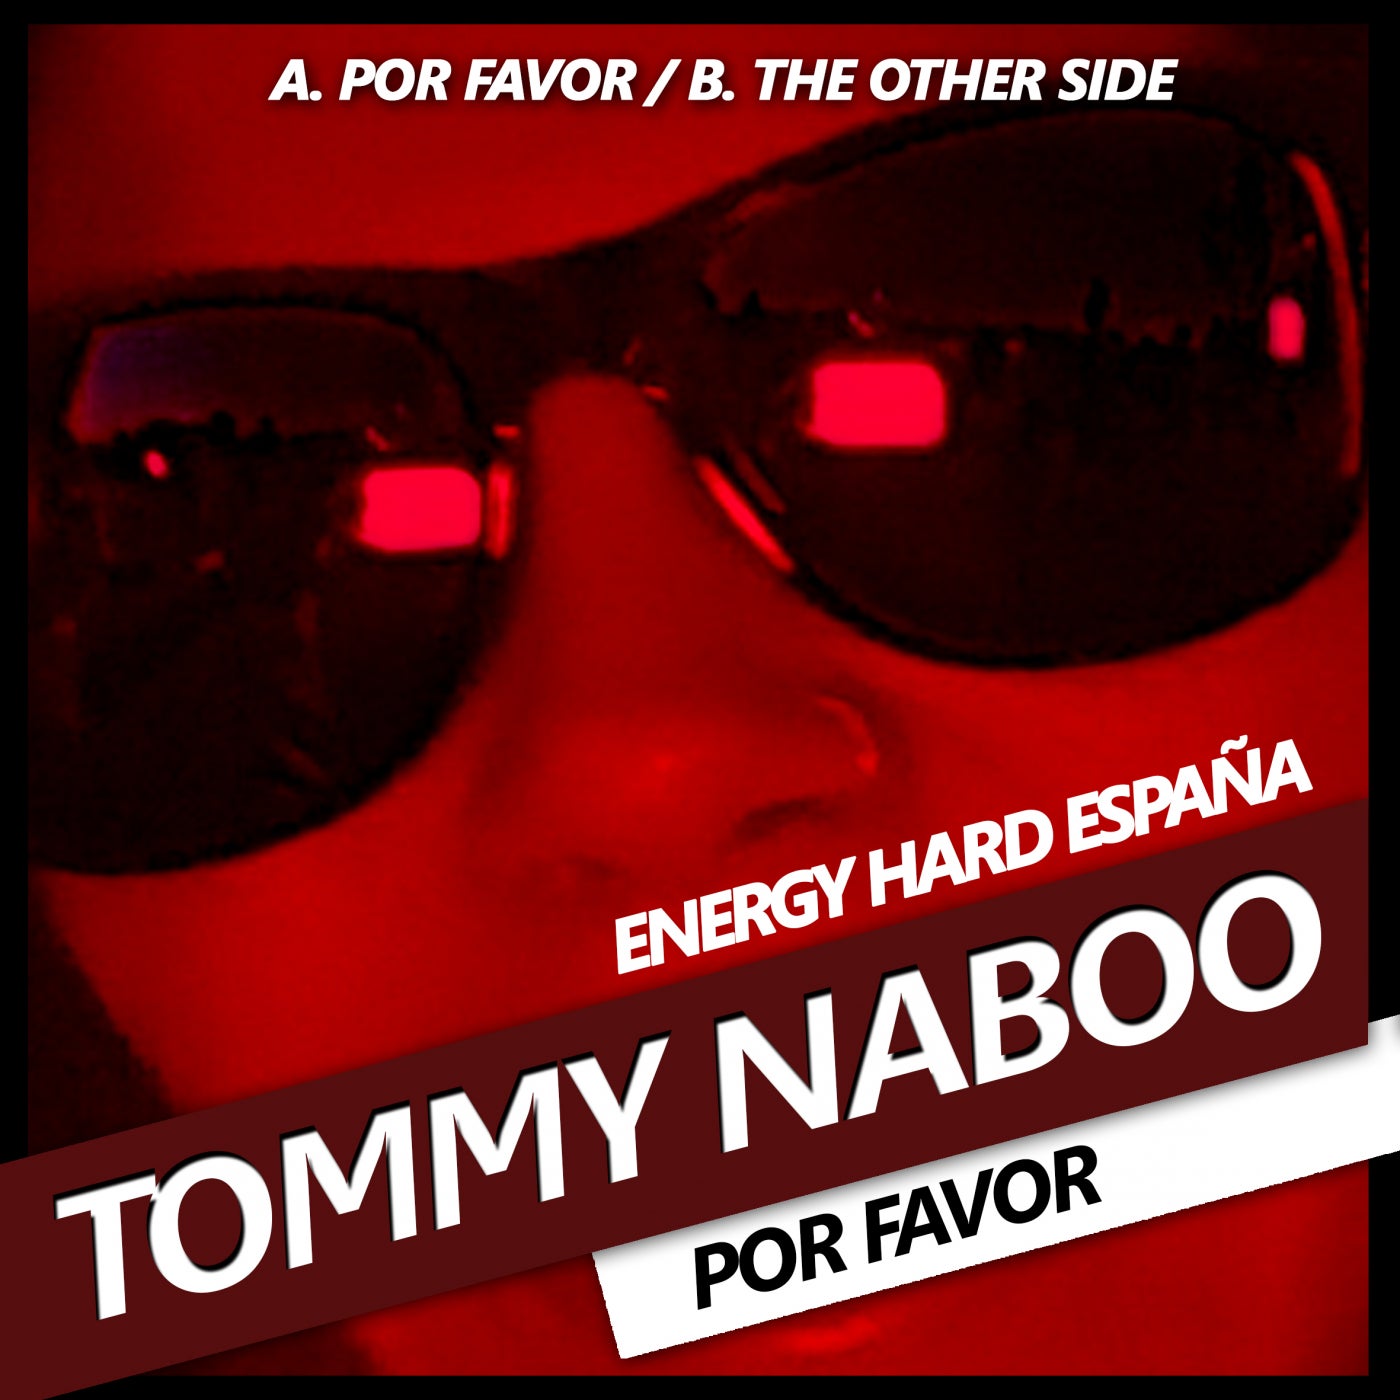 [EHE229] Tommy Naboo - Por Favor 2bfc0917-2cce-4597-9540-fd92d55af7b4